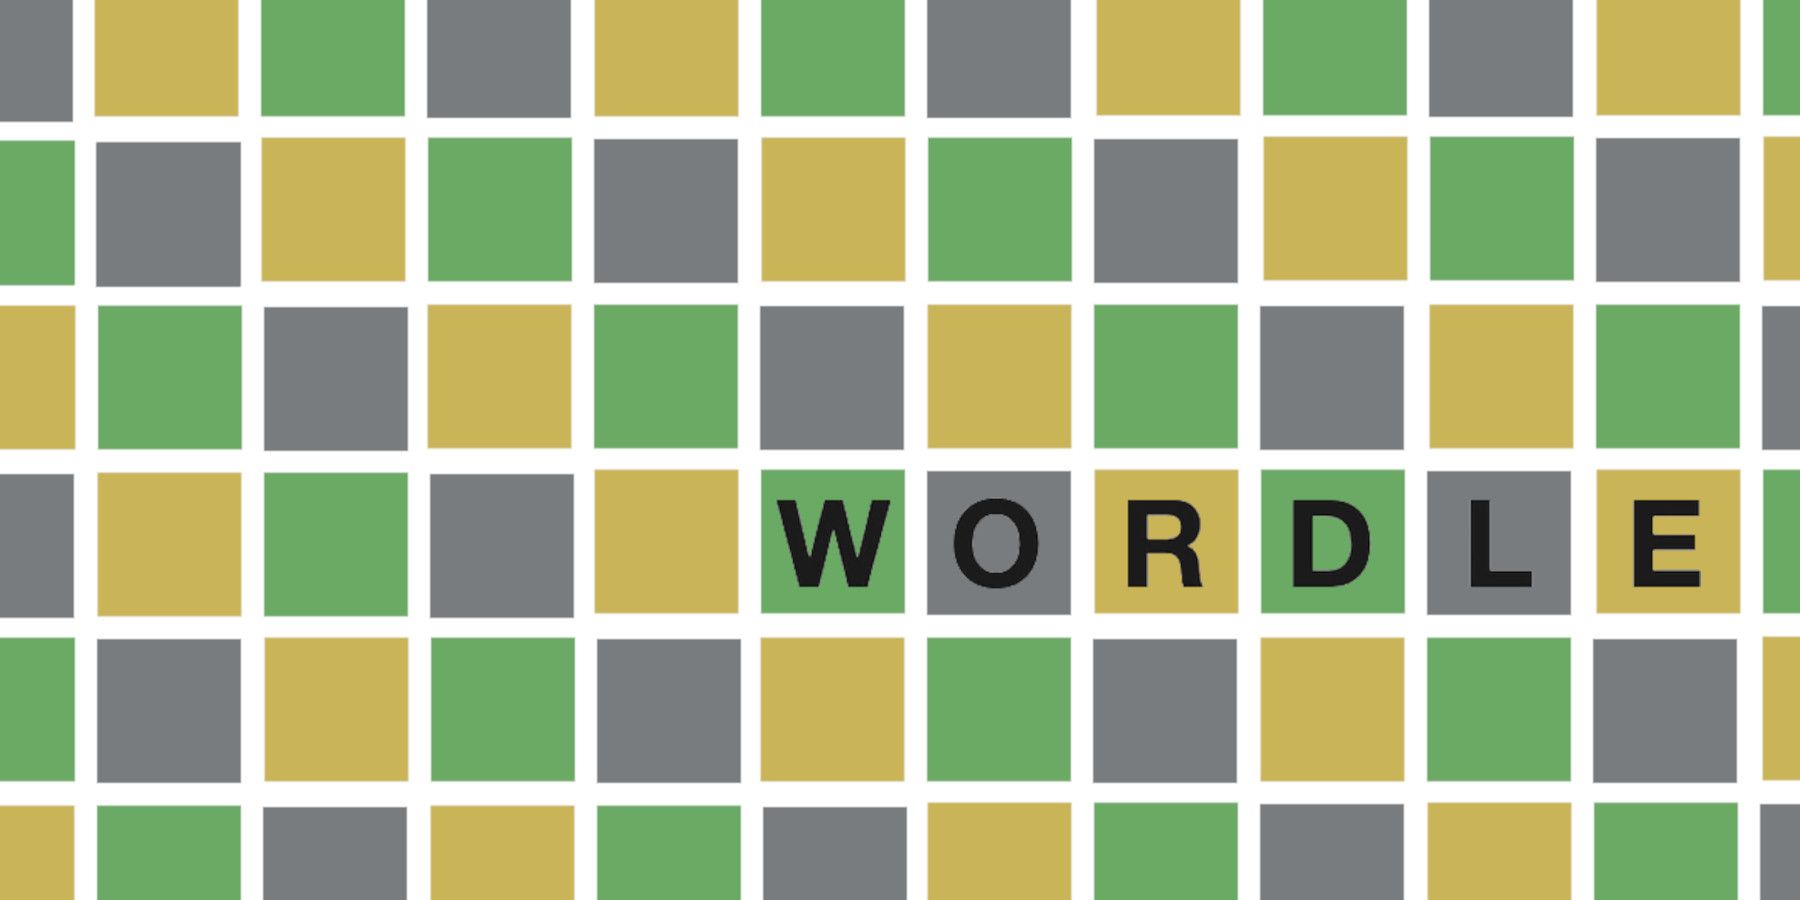 Wordle 232 პასუხი 2022 წლის 6 თებერვლისთვის